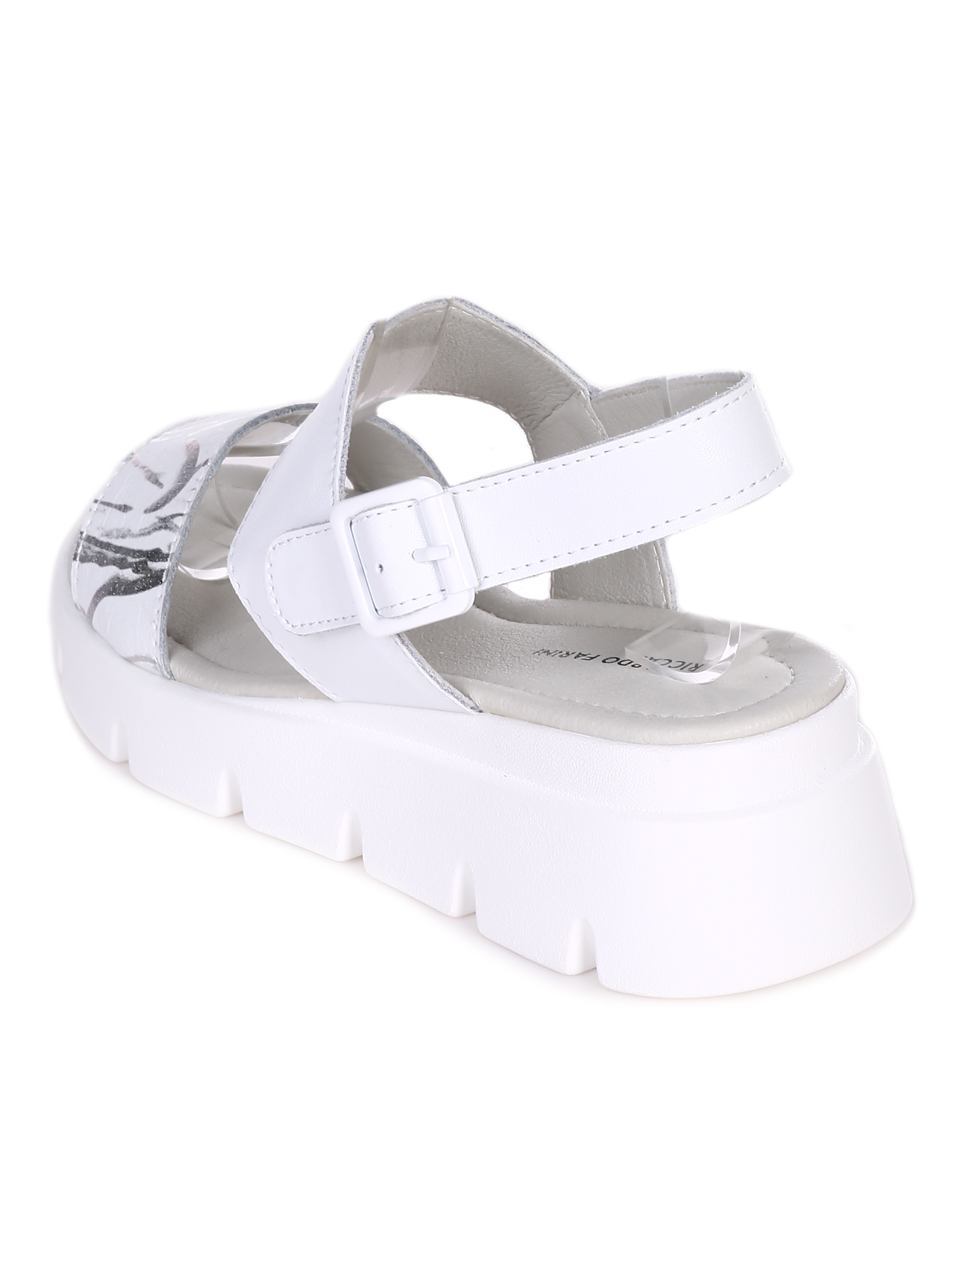 Ежедневни дамски сандали на платформа от естествена кожа в бяло 4AF-23156 white